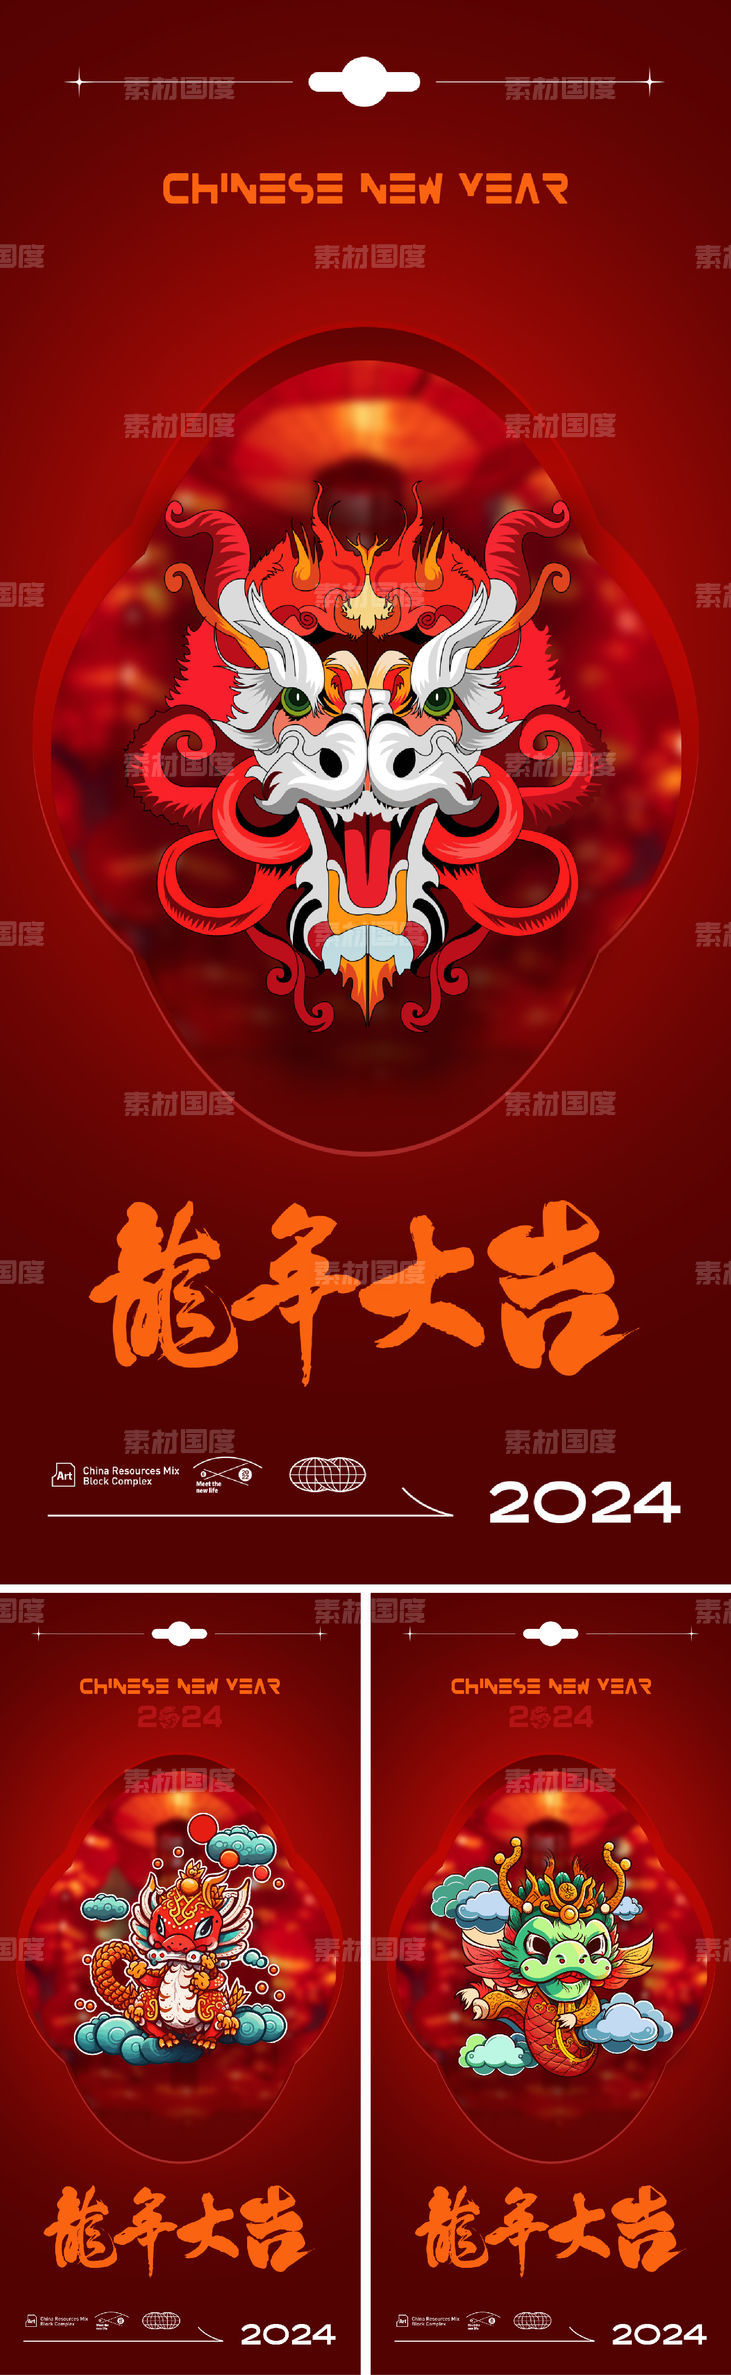 2024龙年海报